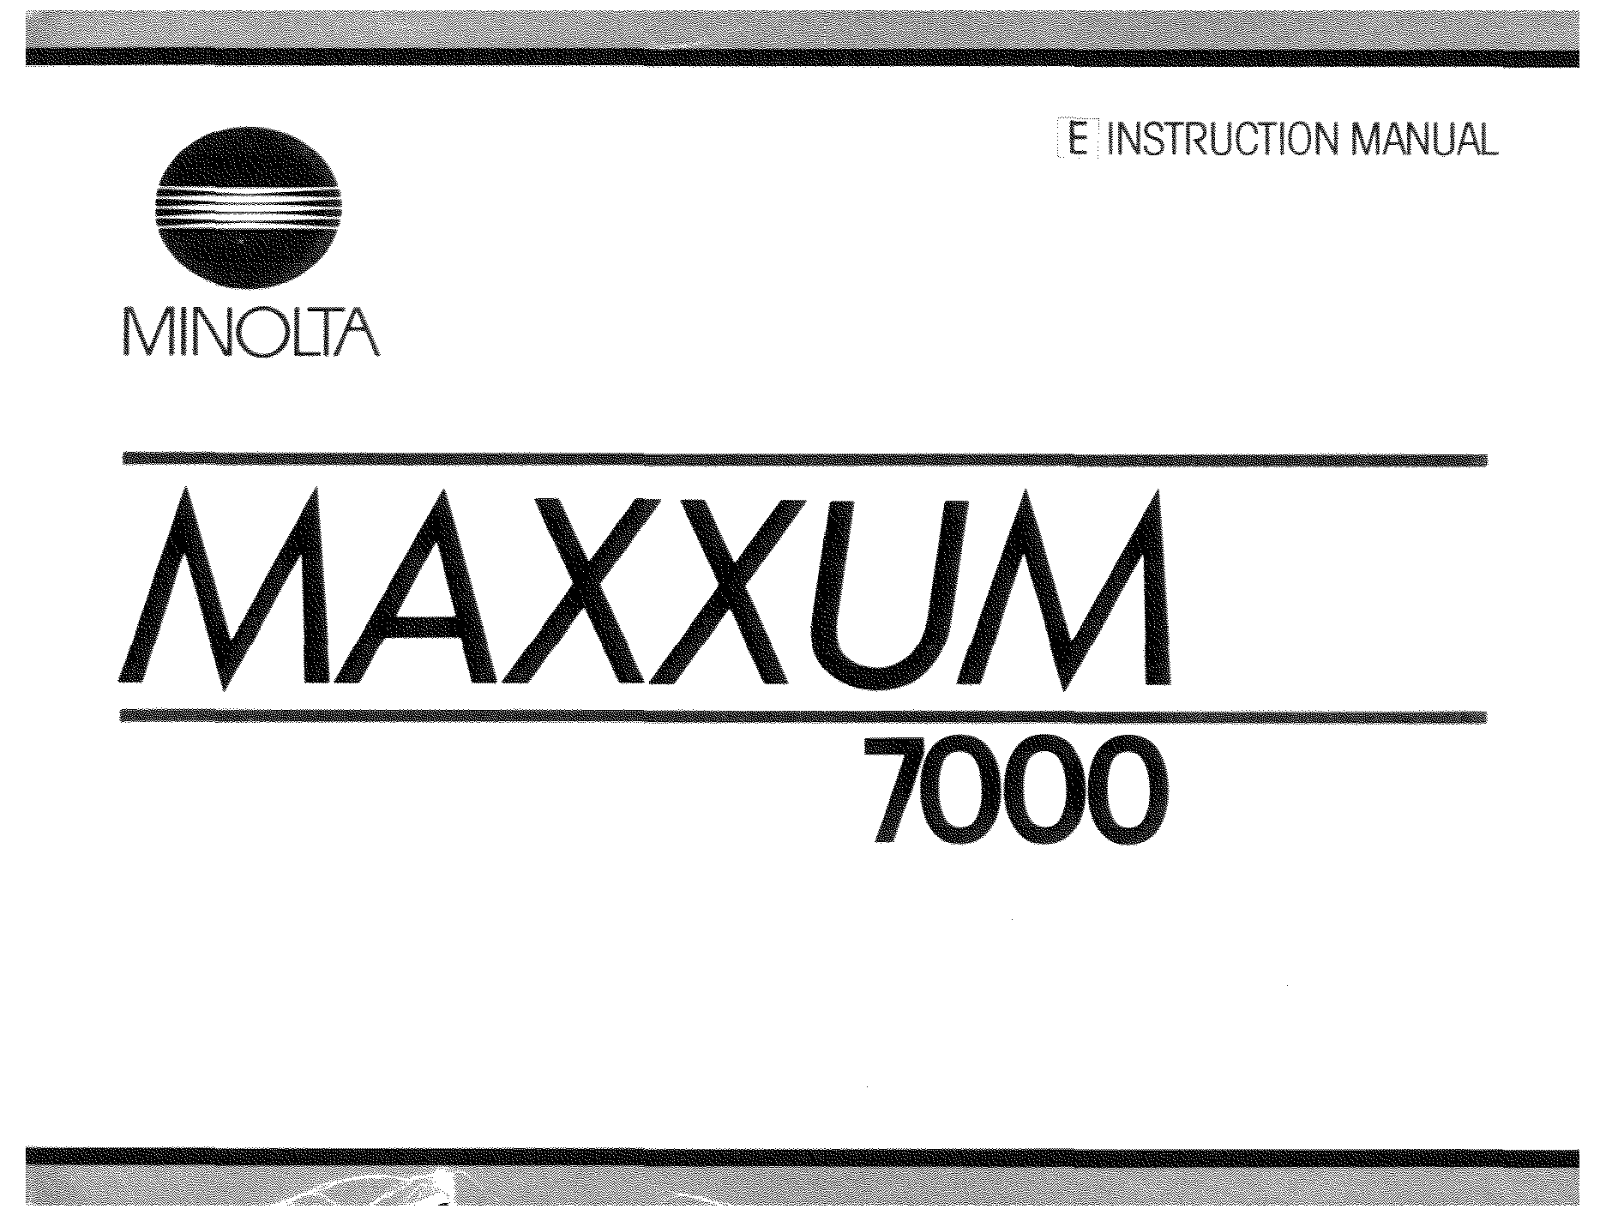 Minolta MAXXUM 7000 instruction Manual